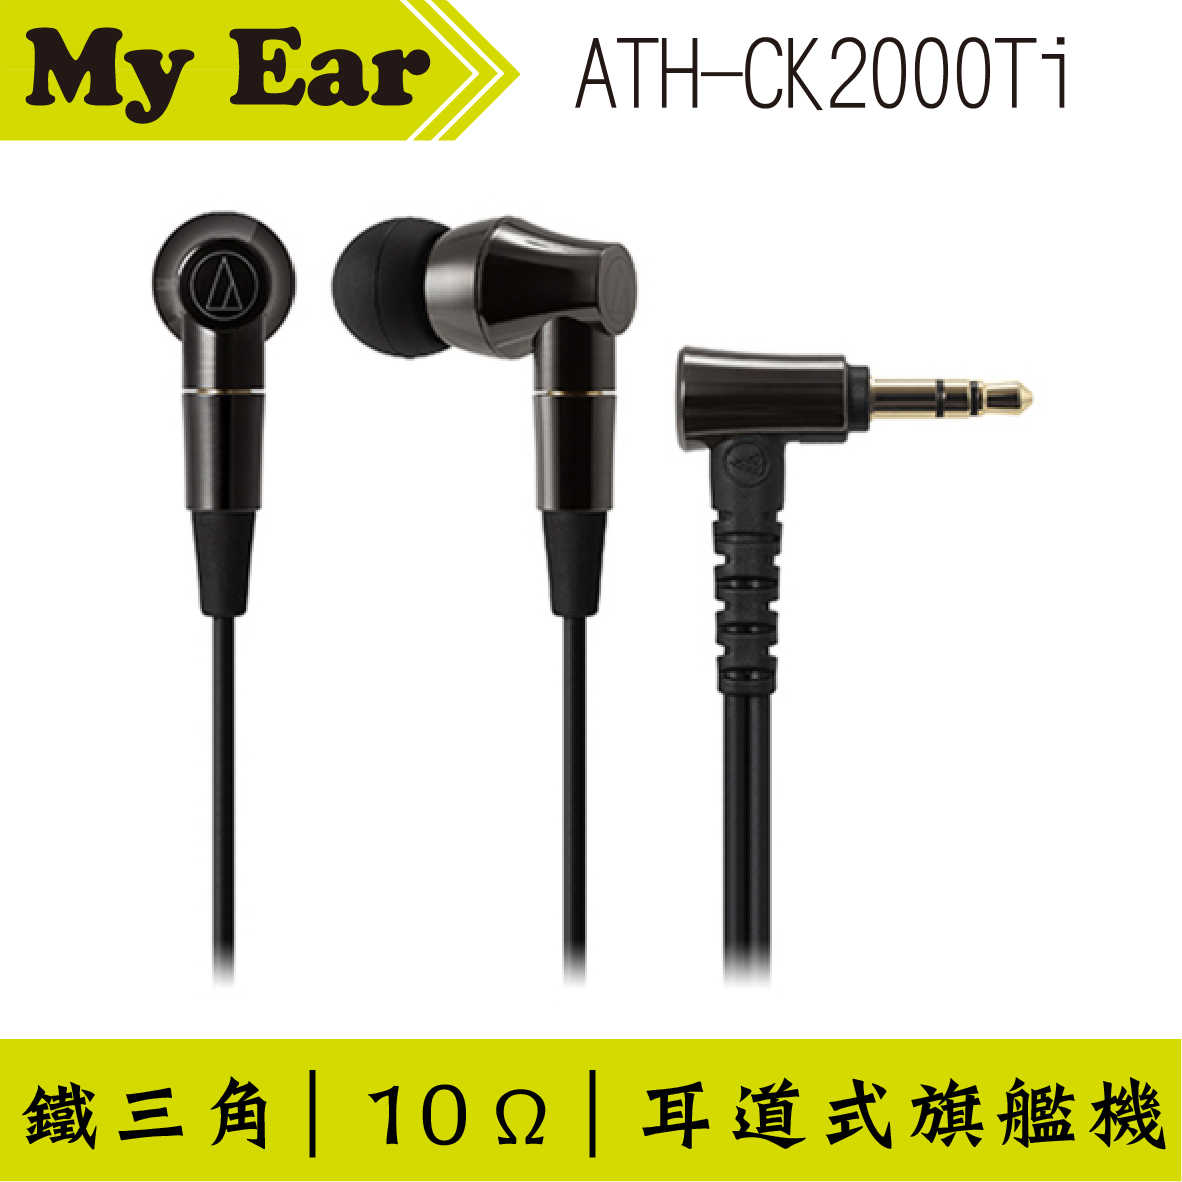 鐵三角 ATH-CK2000Ti 耳道型旗艦耳機 | Ｍy Ear 耳機專門店